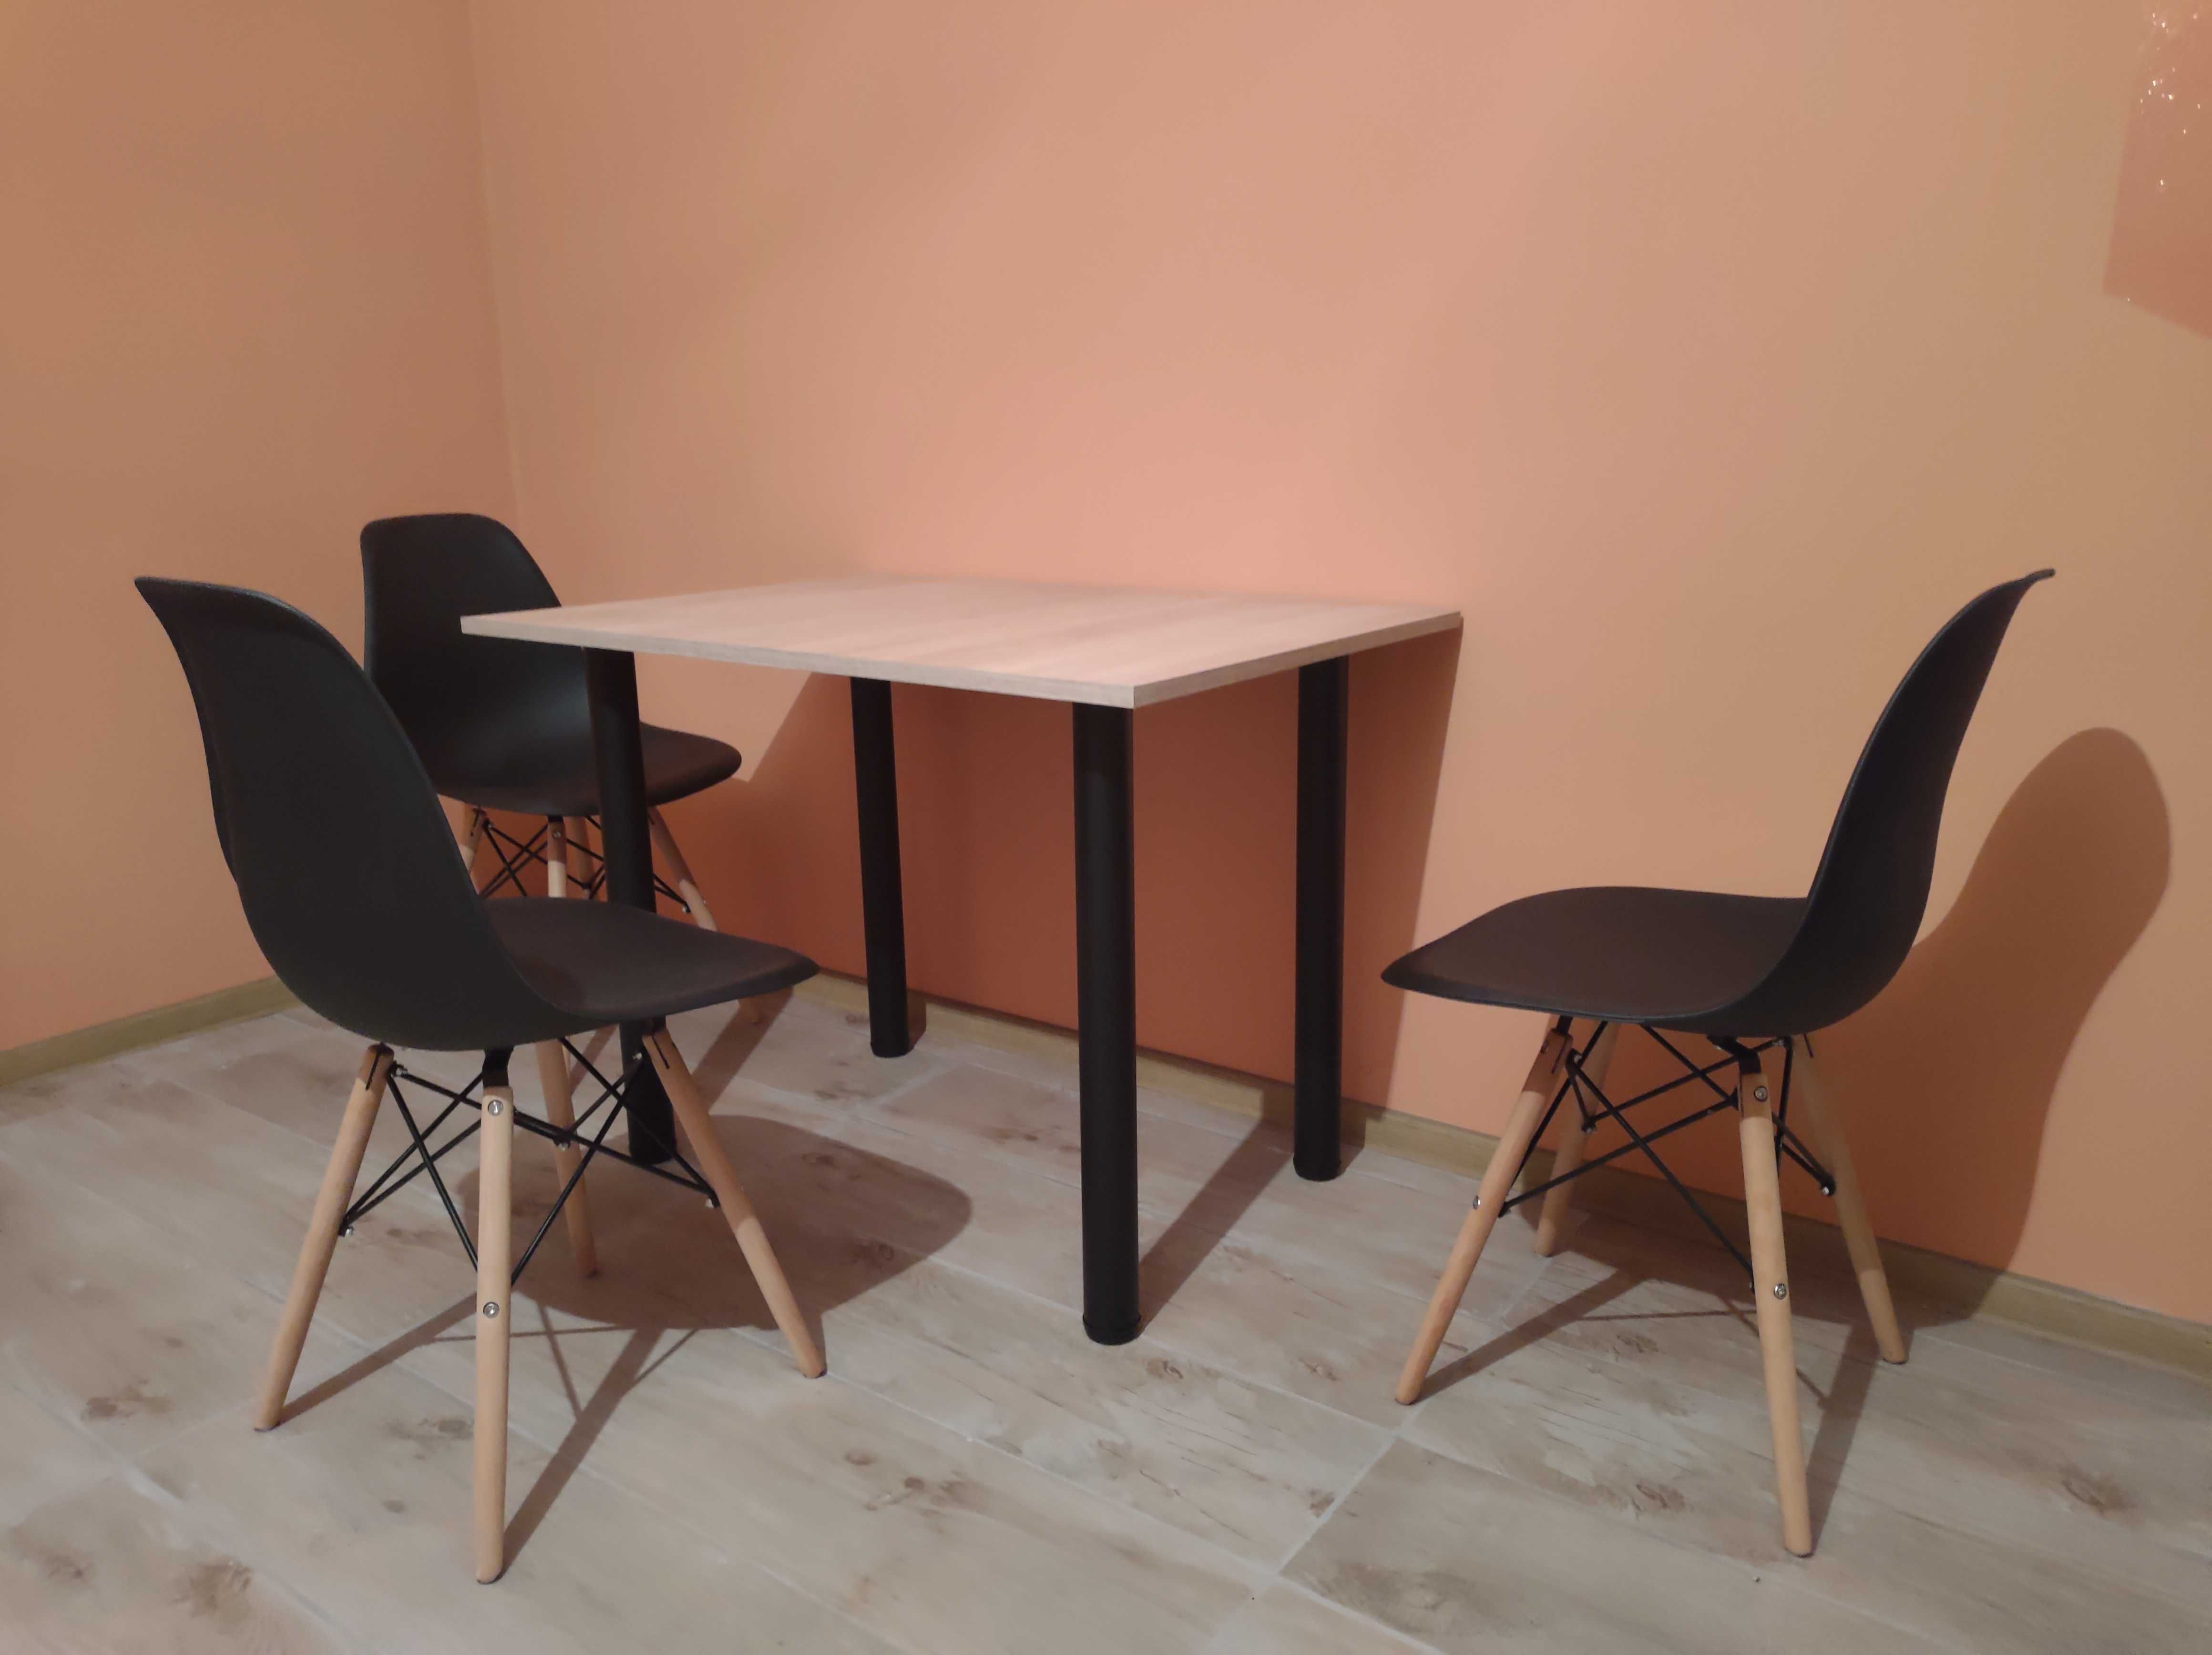 Stół z 3 krzesłami Skandynawski styl krzesło Skandynawski